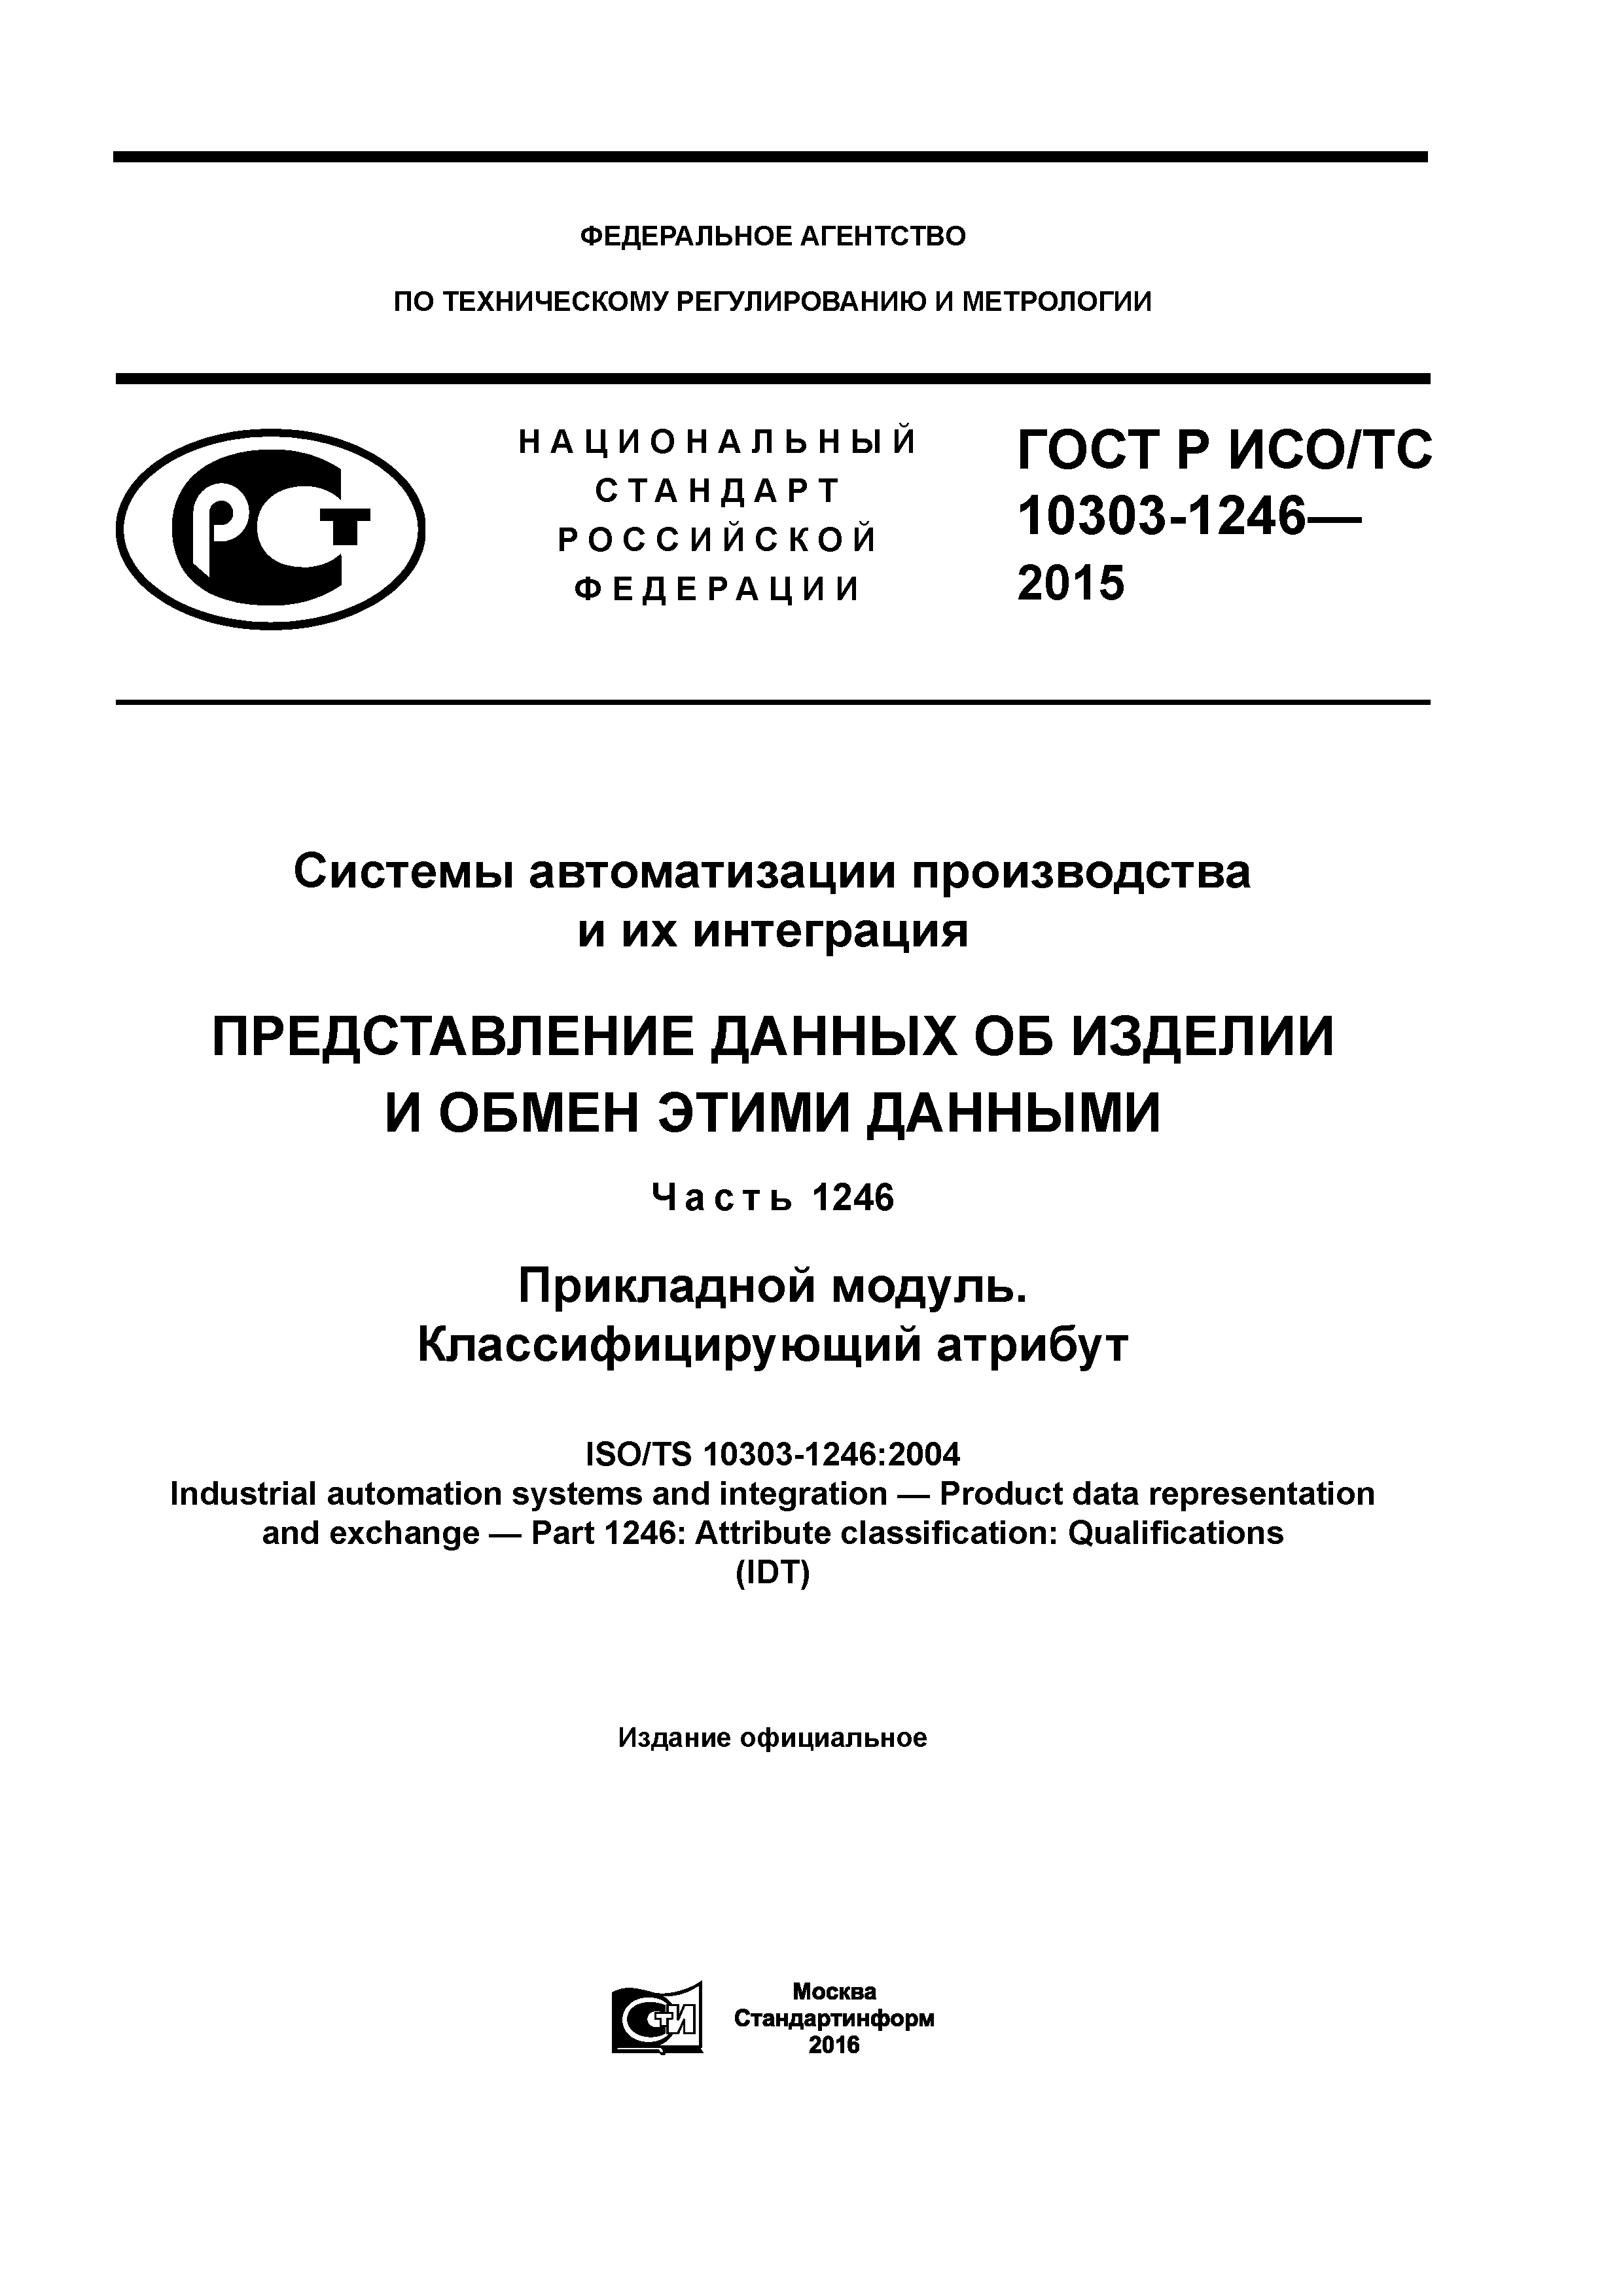 ГОСТ Р ИСО/ТС 10303-1246-2015